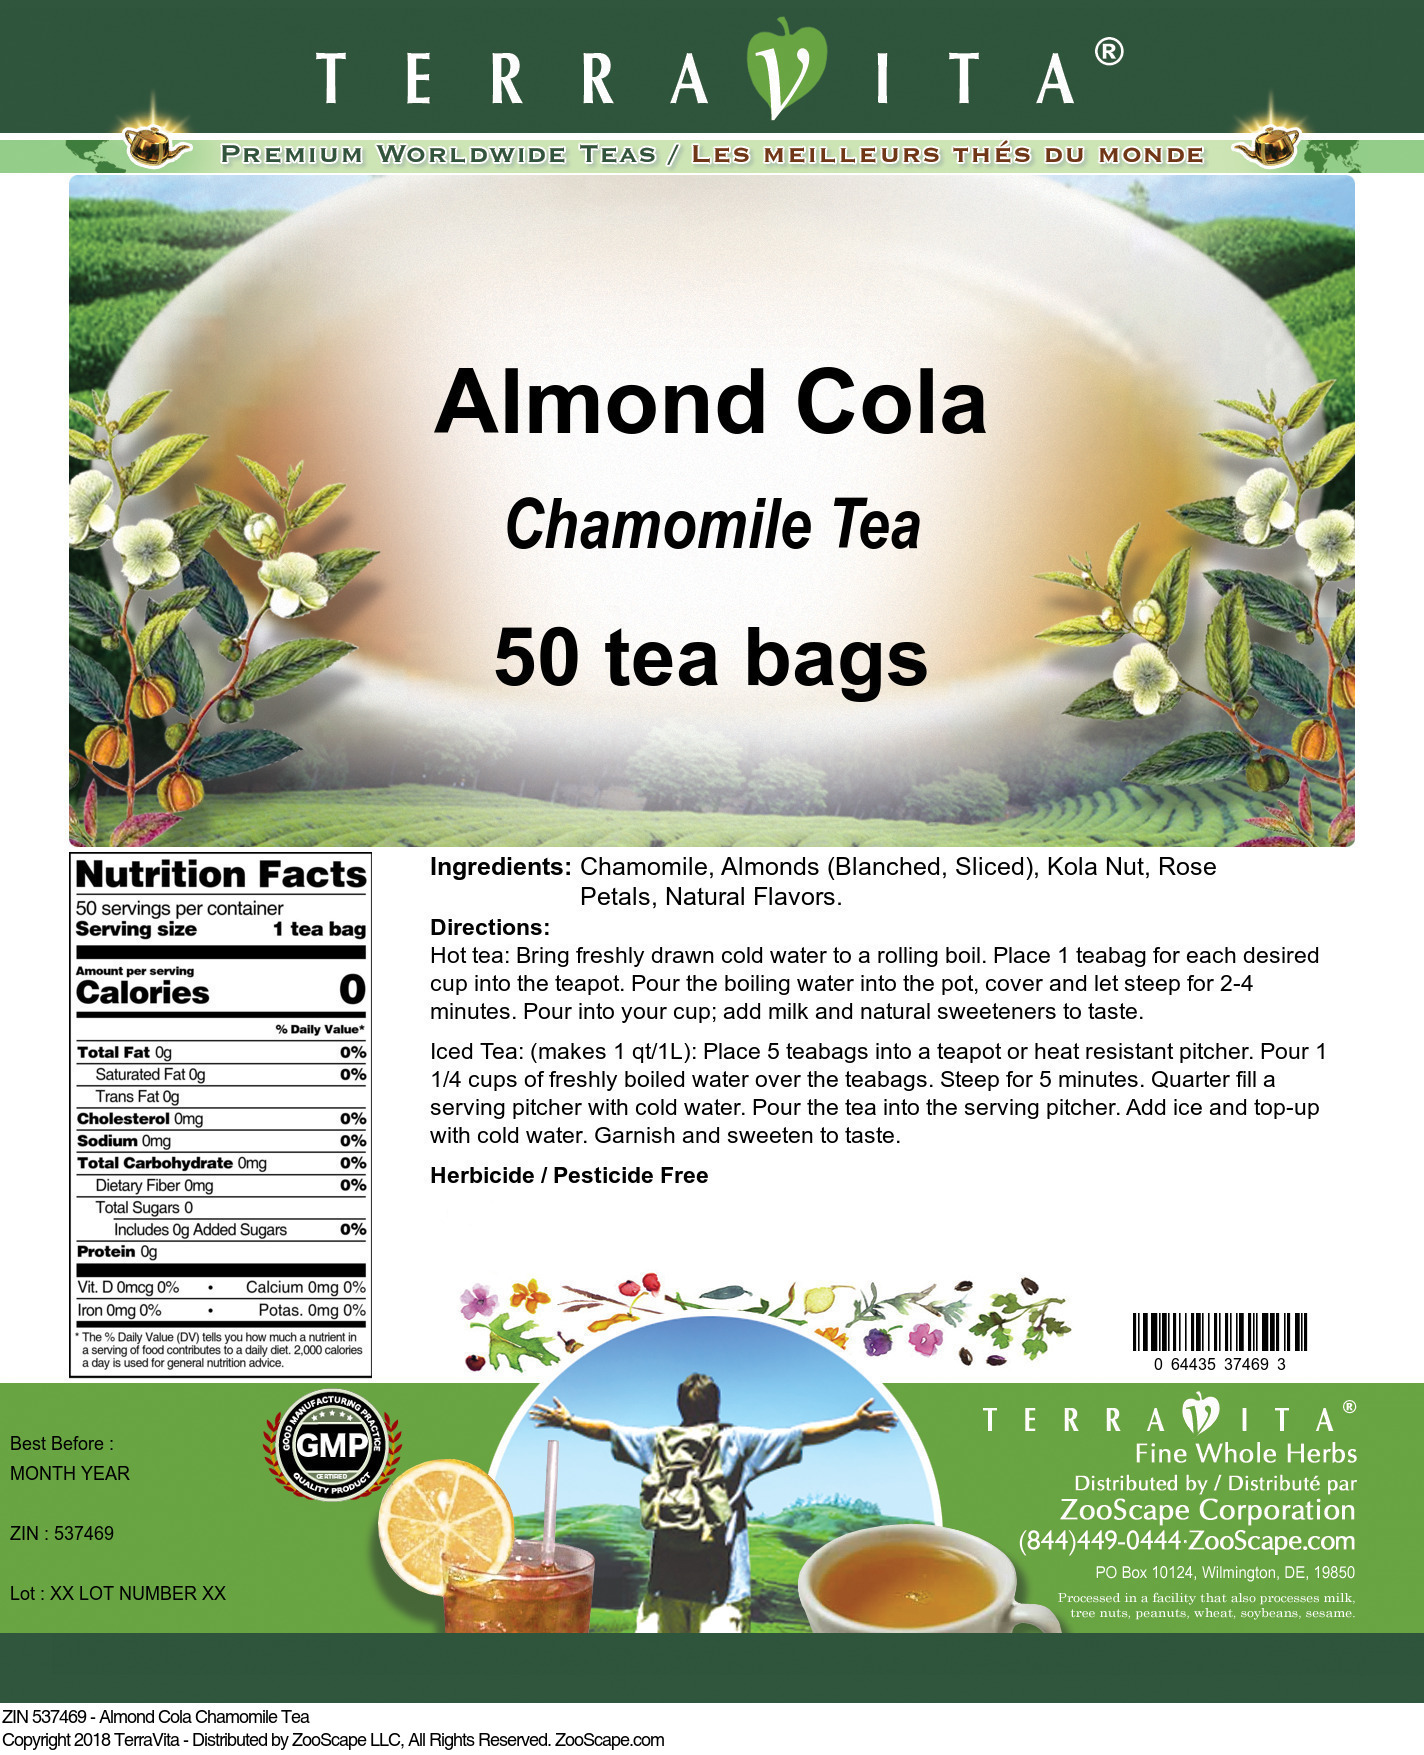 Almond Cola Chamomile Tea - Label